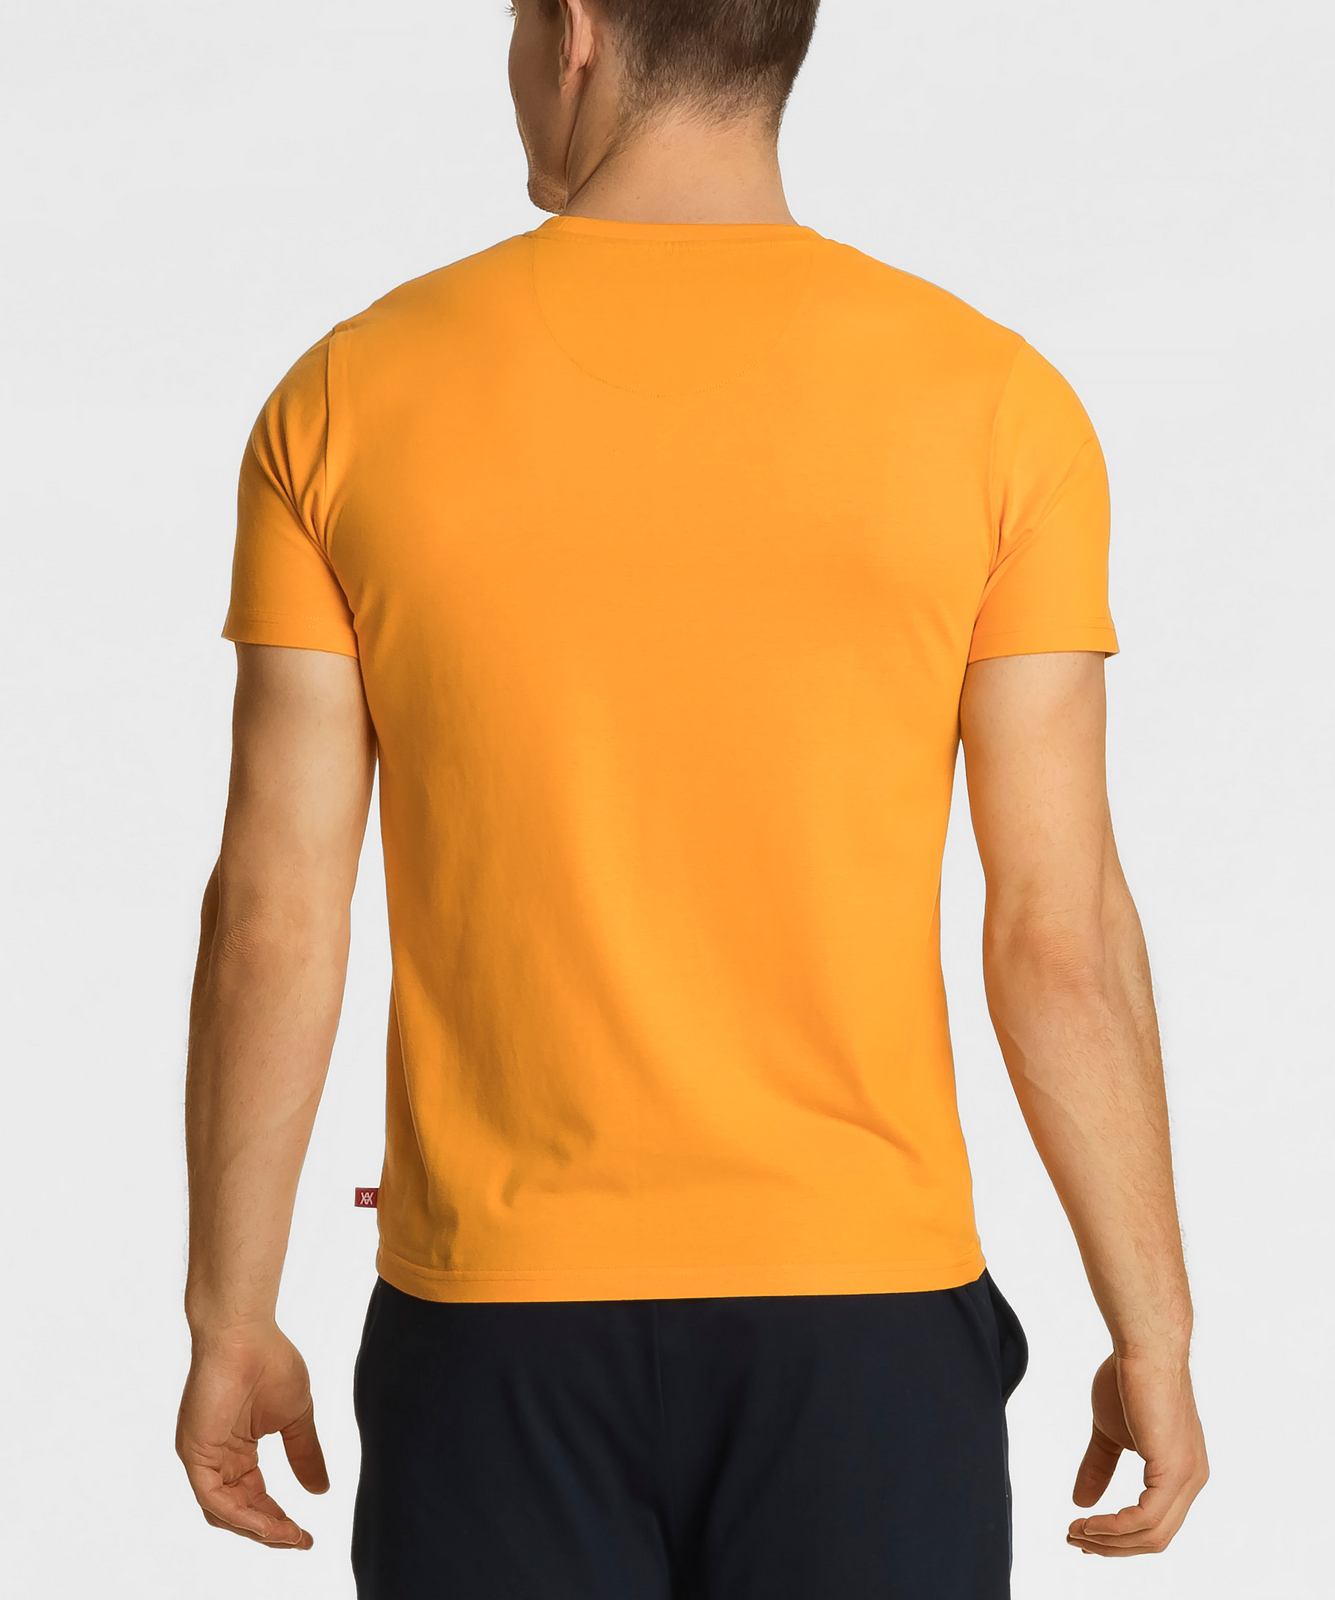 

Футболка мужская Atlantic, 1 шт. в уп., хлопок, светло-оранжевая, NMT-034, Светло-оранжевый